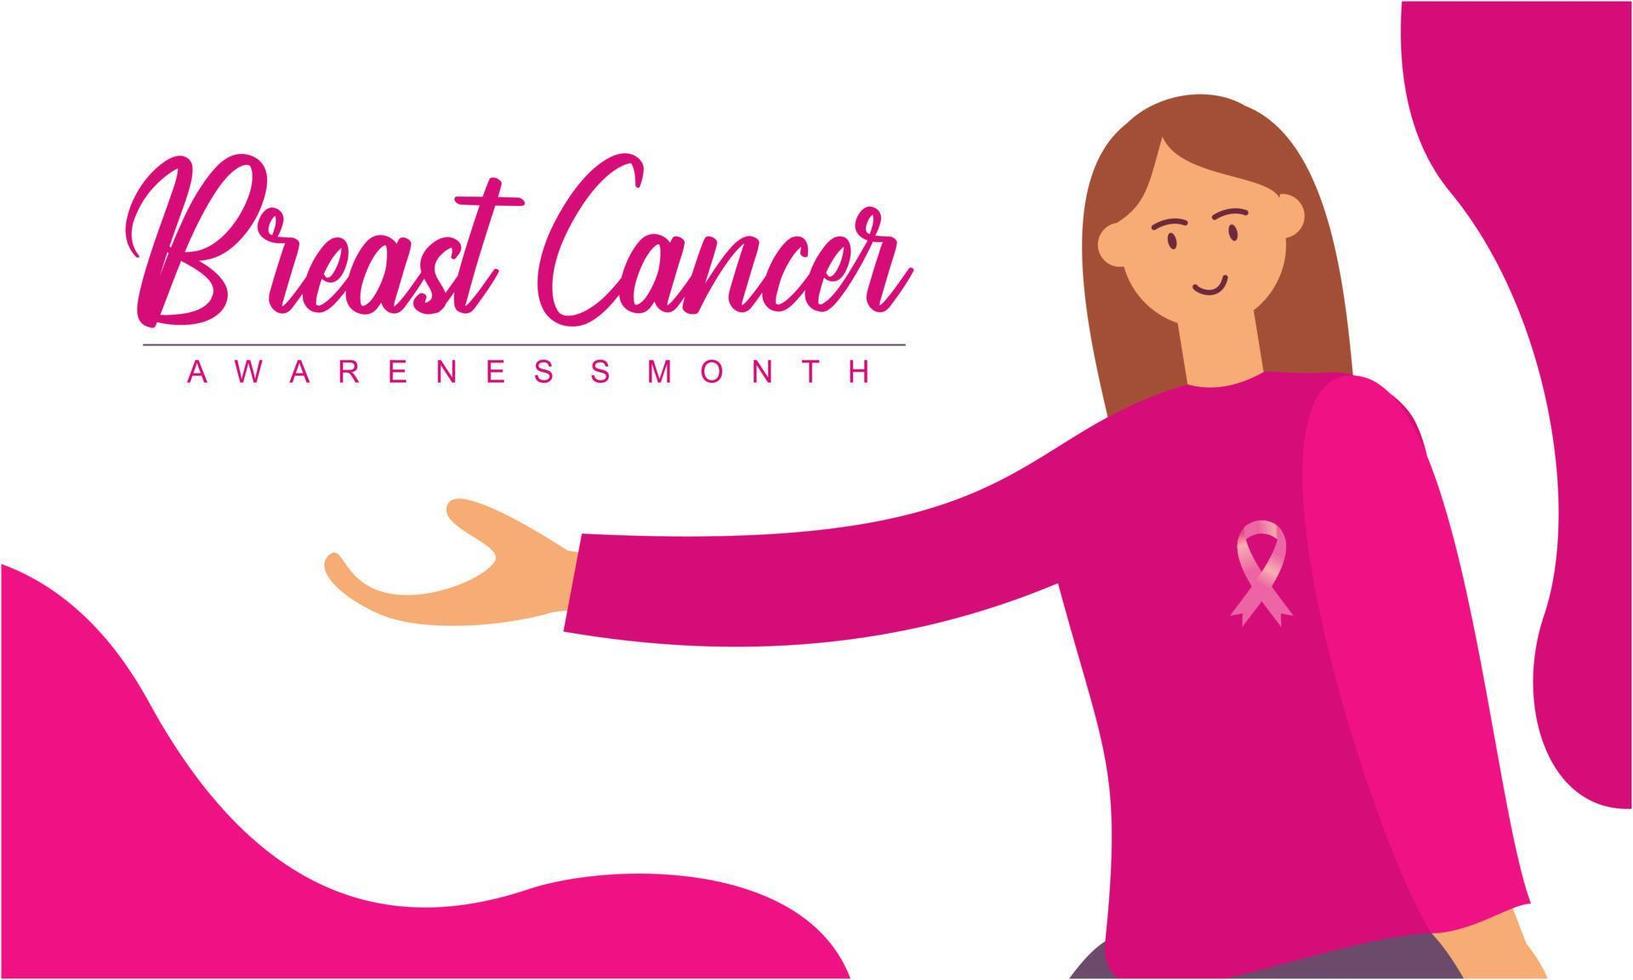 mês de conscientização do câncer de mama do grupo de diversas mulheres étnicas juntamente com o conceito de fita de apoio rosa vetor